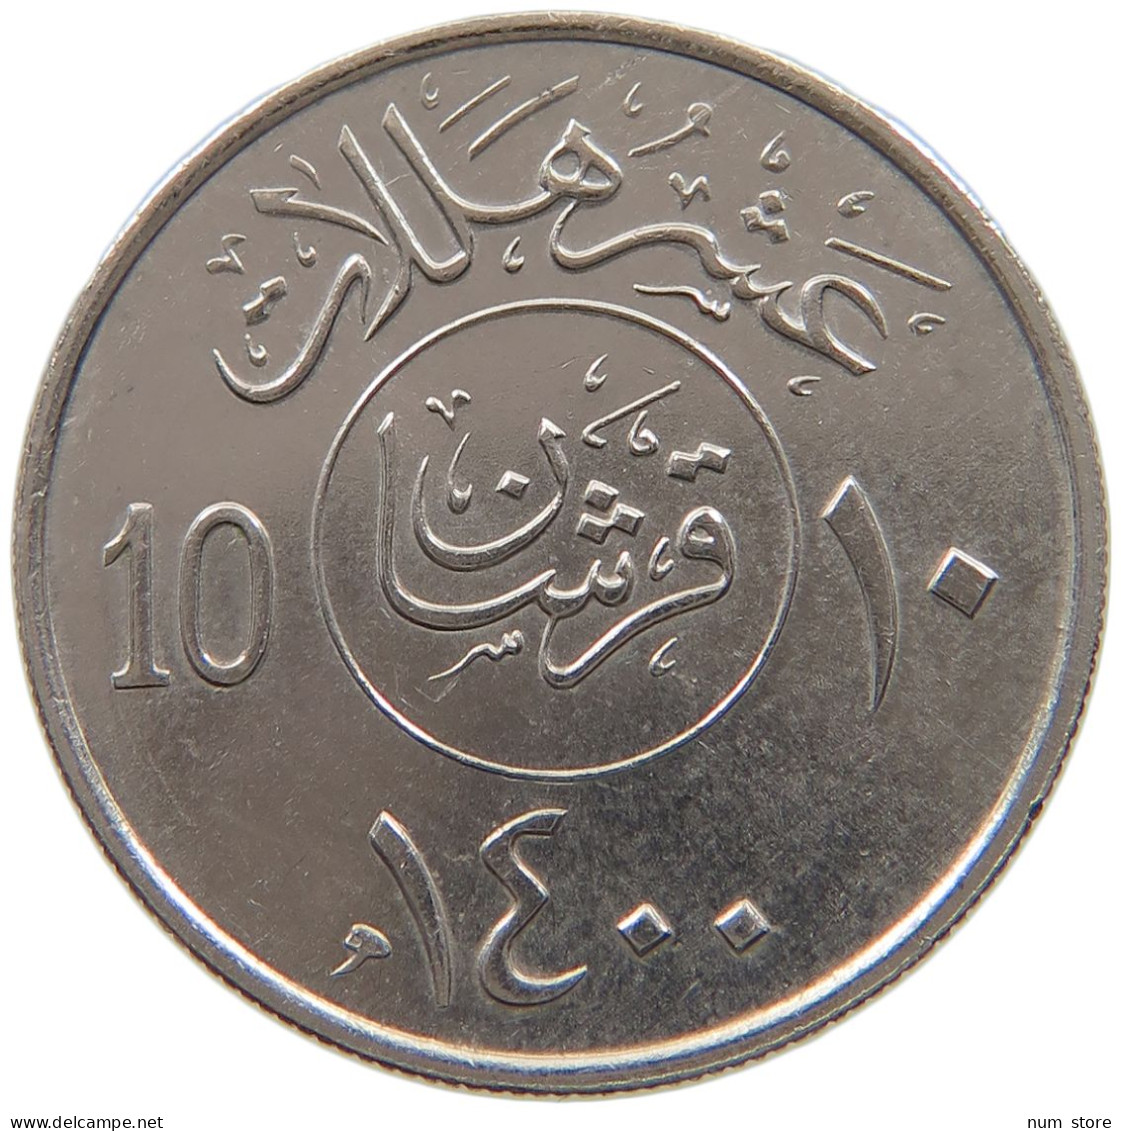 SAUDI ARABIA 10 HALALA 1400  #a050 0117 - Arabia Saudita